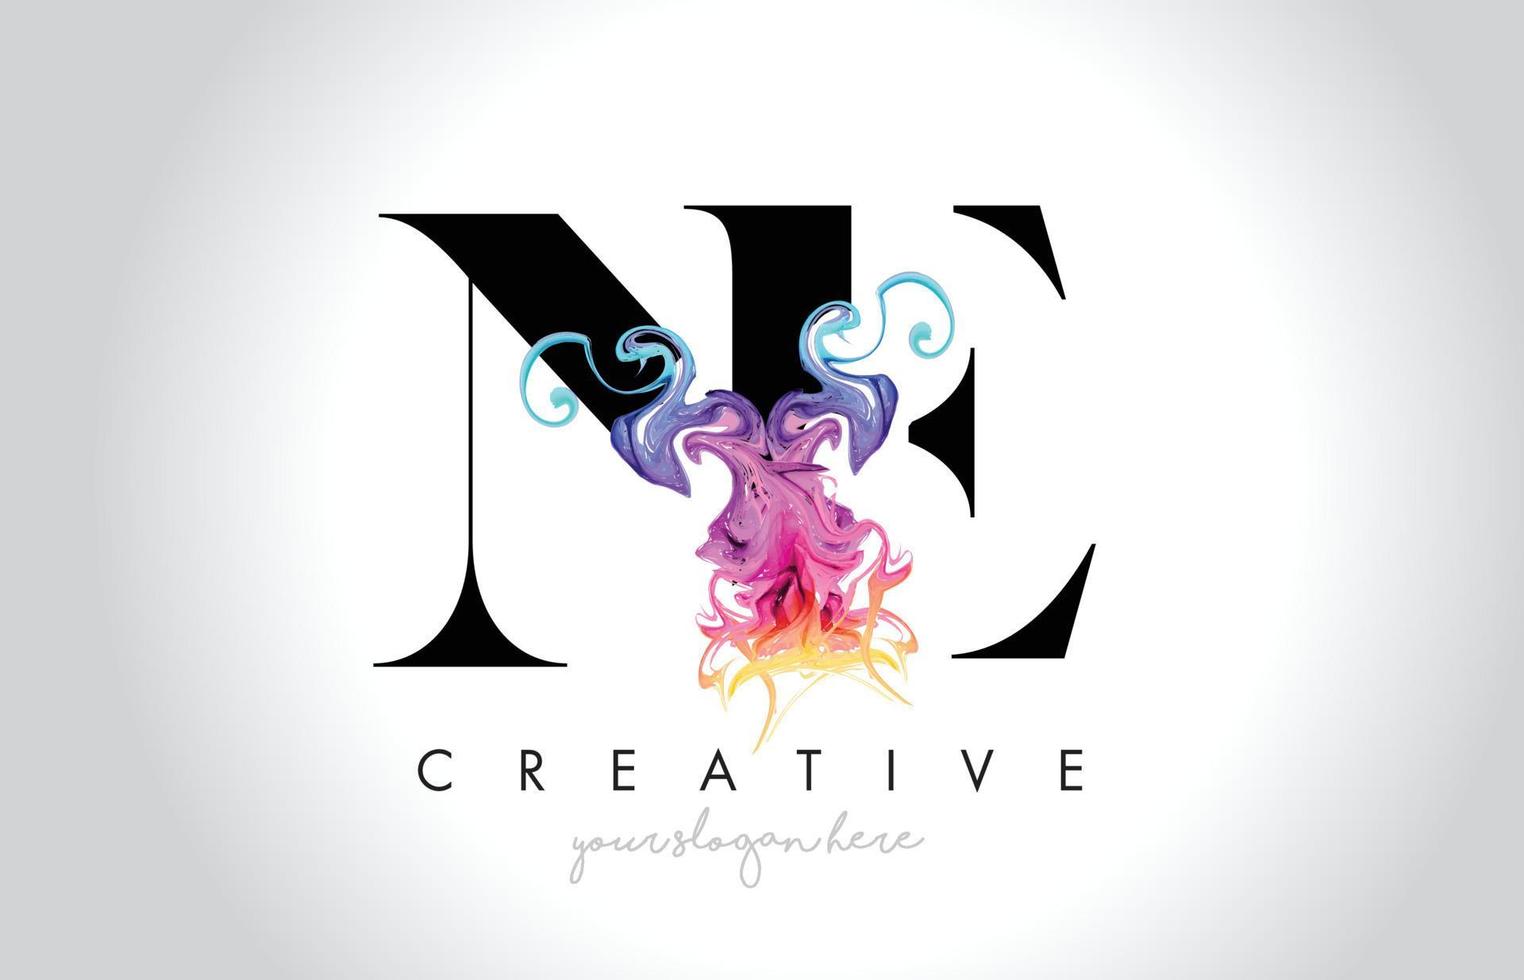 Um design de logotipo vibrante e criativo com tinta de fumaça colorida fluindo vetor